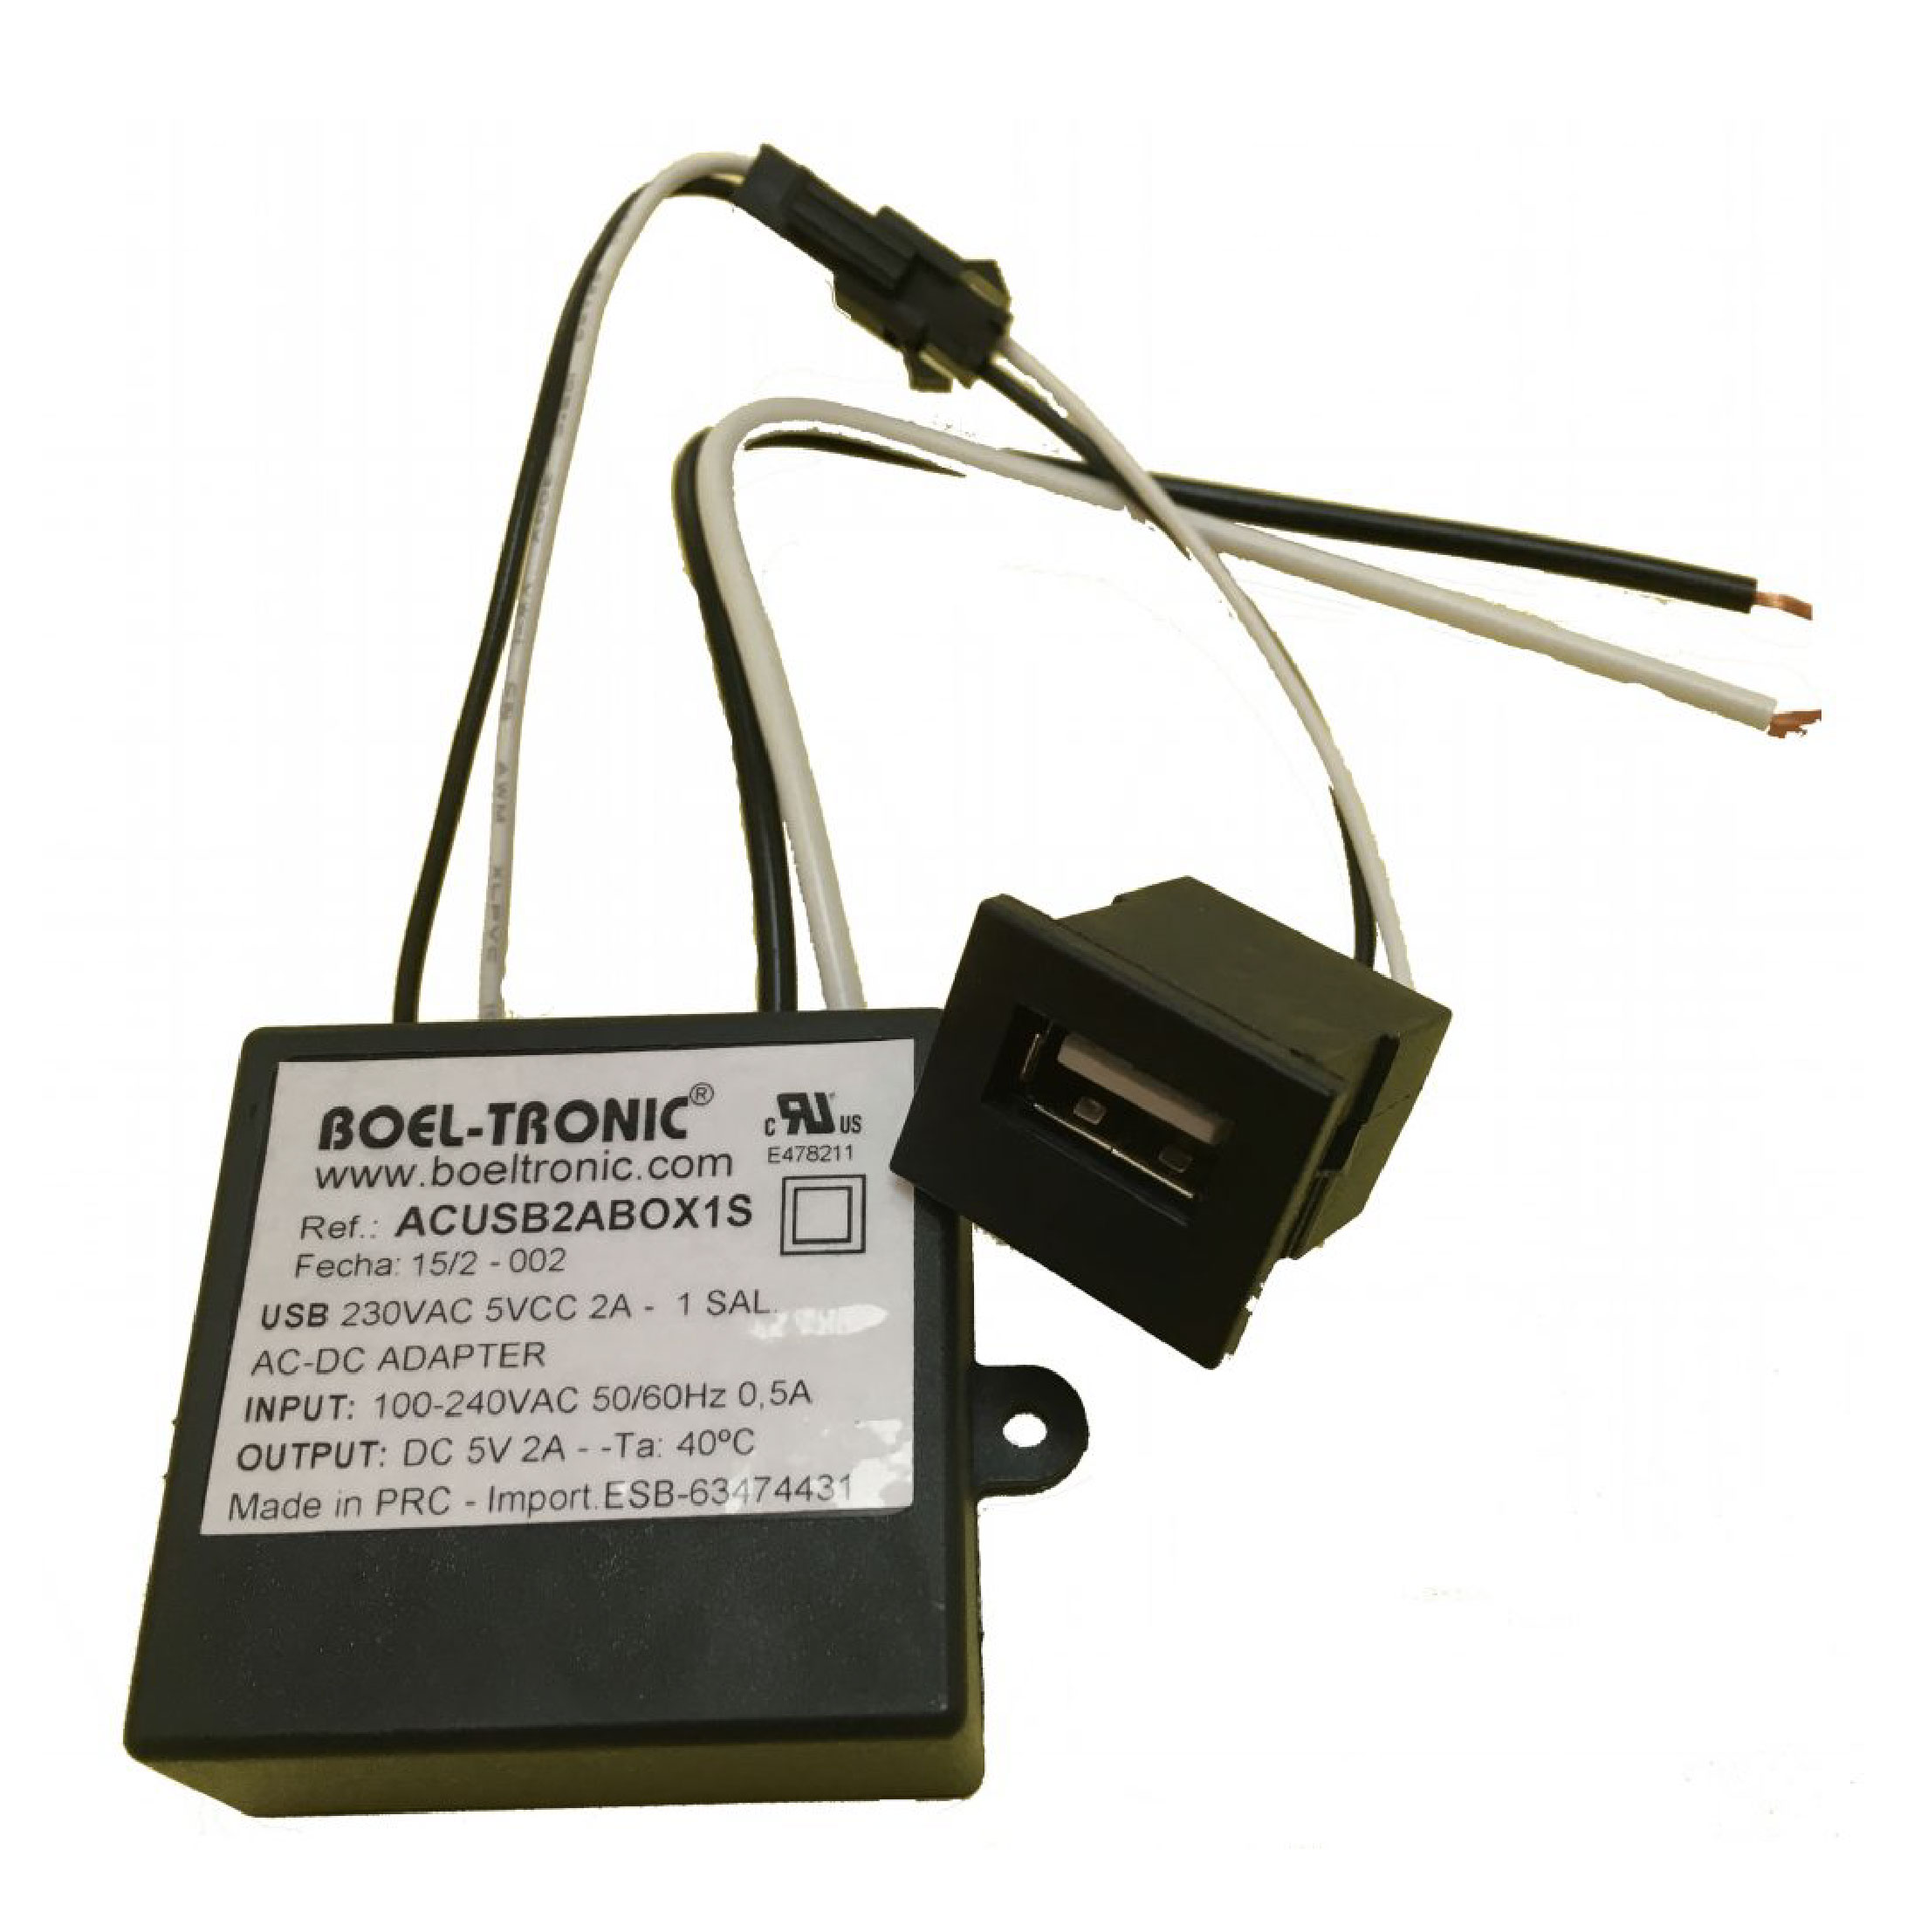 USB EMPOTRADO CON 1 o 2 SALIDAS 5VDC 2A